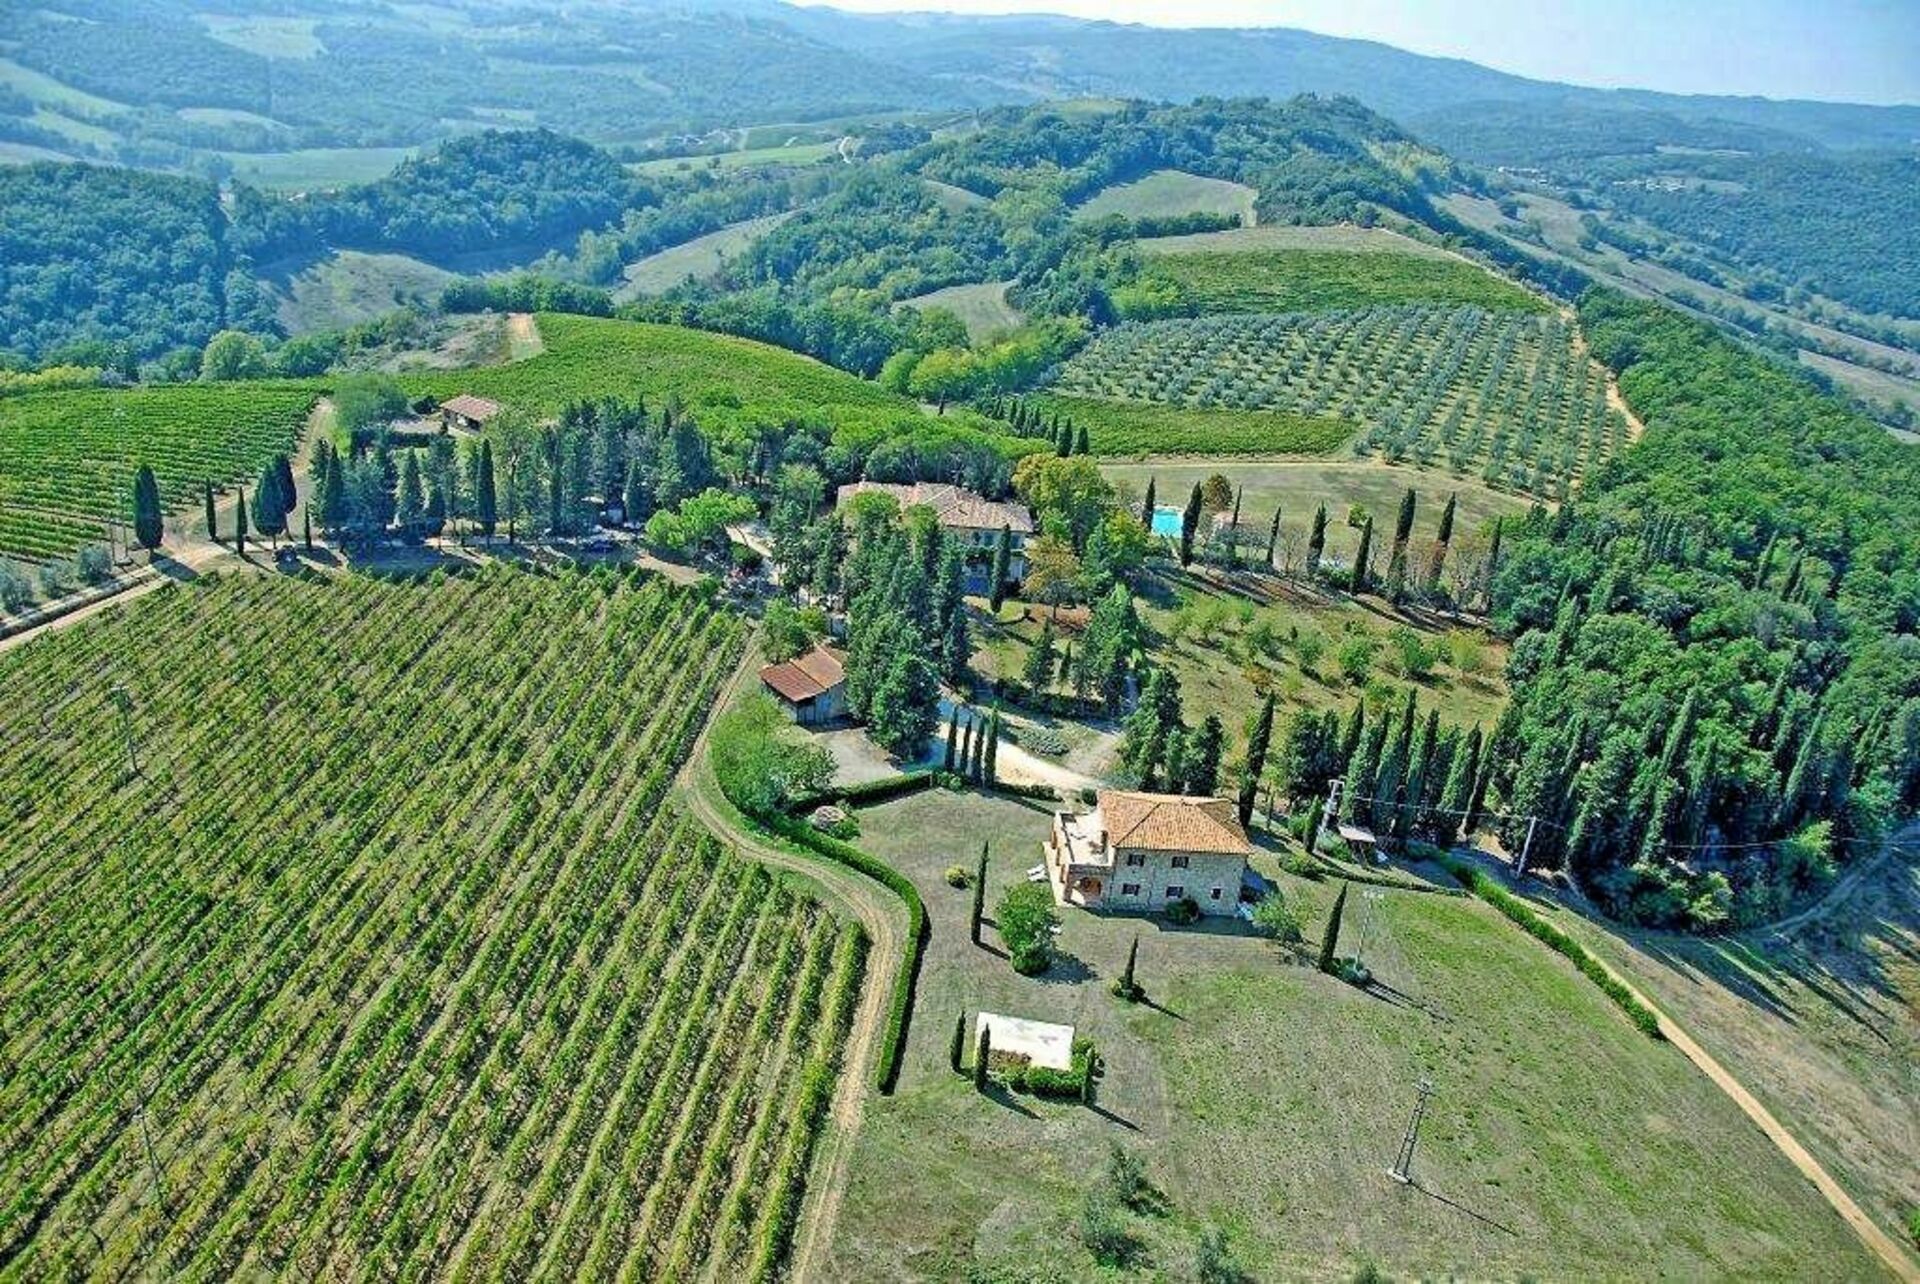 Topp 10 platser att undvika i Toscana: upptäck fallgroparna när du reser i denna region i Italien